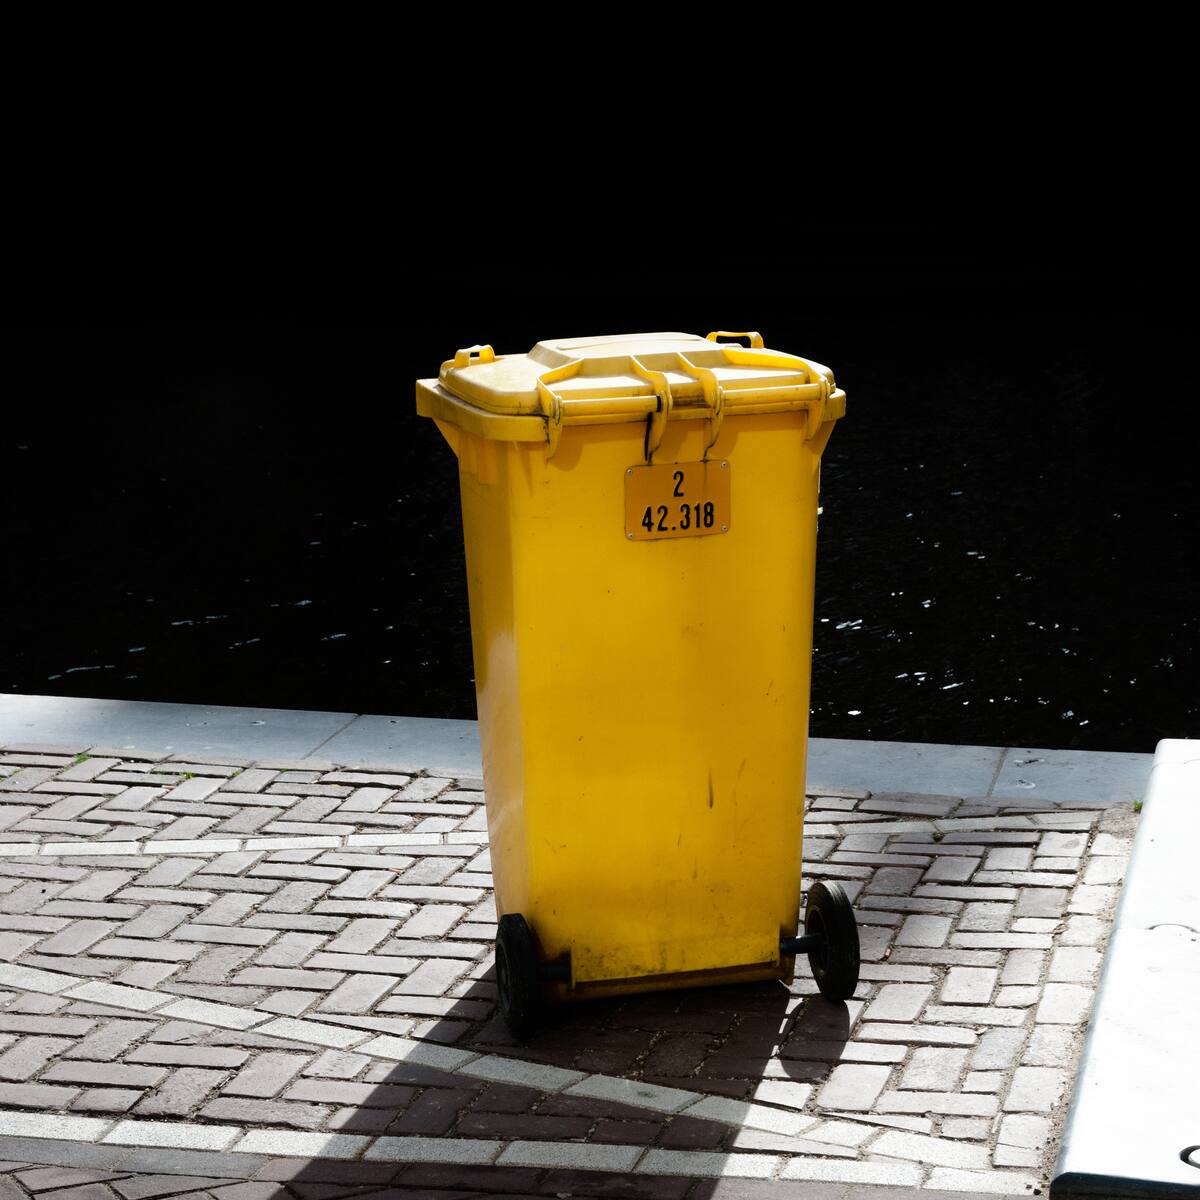 Der Mülleimer stinkt: Tipps und Hausmittel gegen üble Gerüche aus